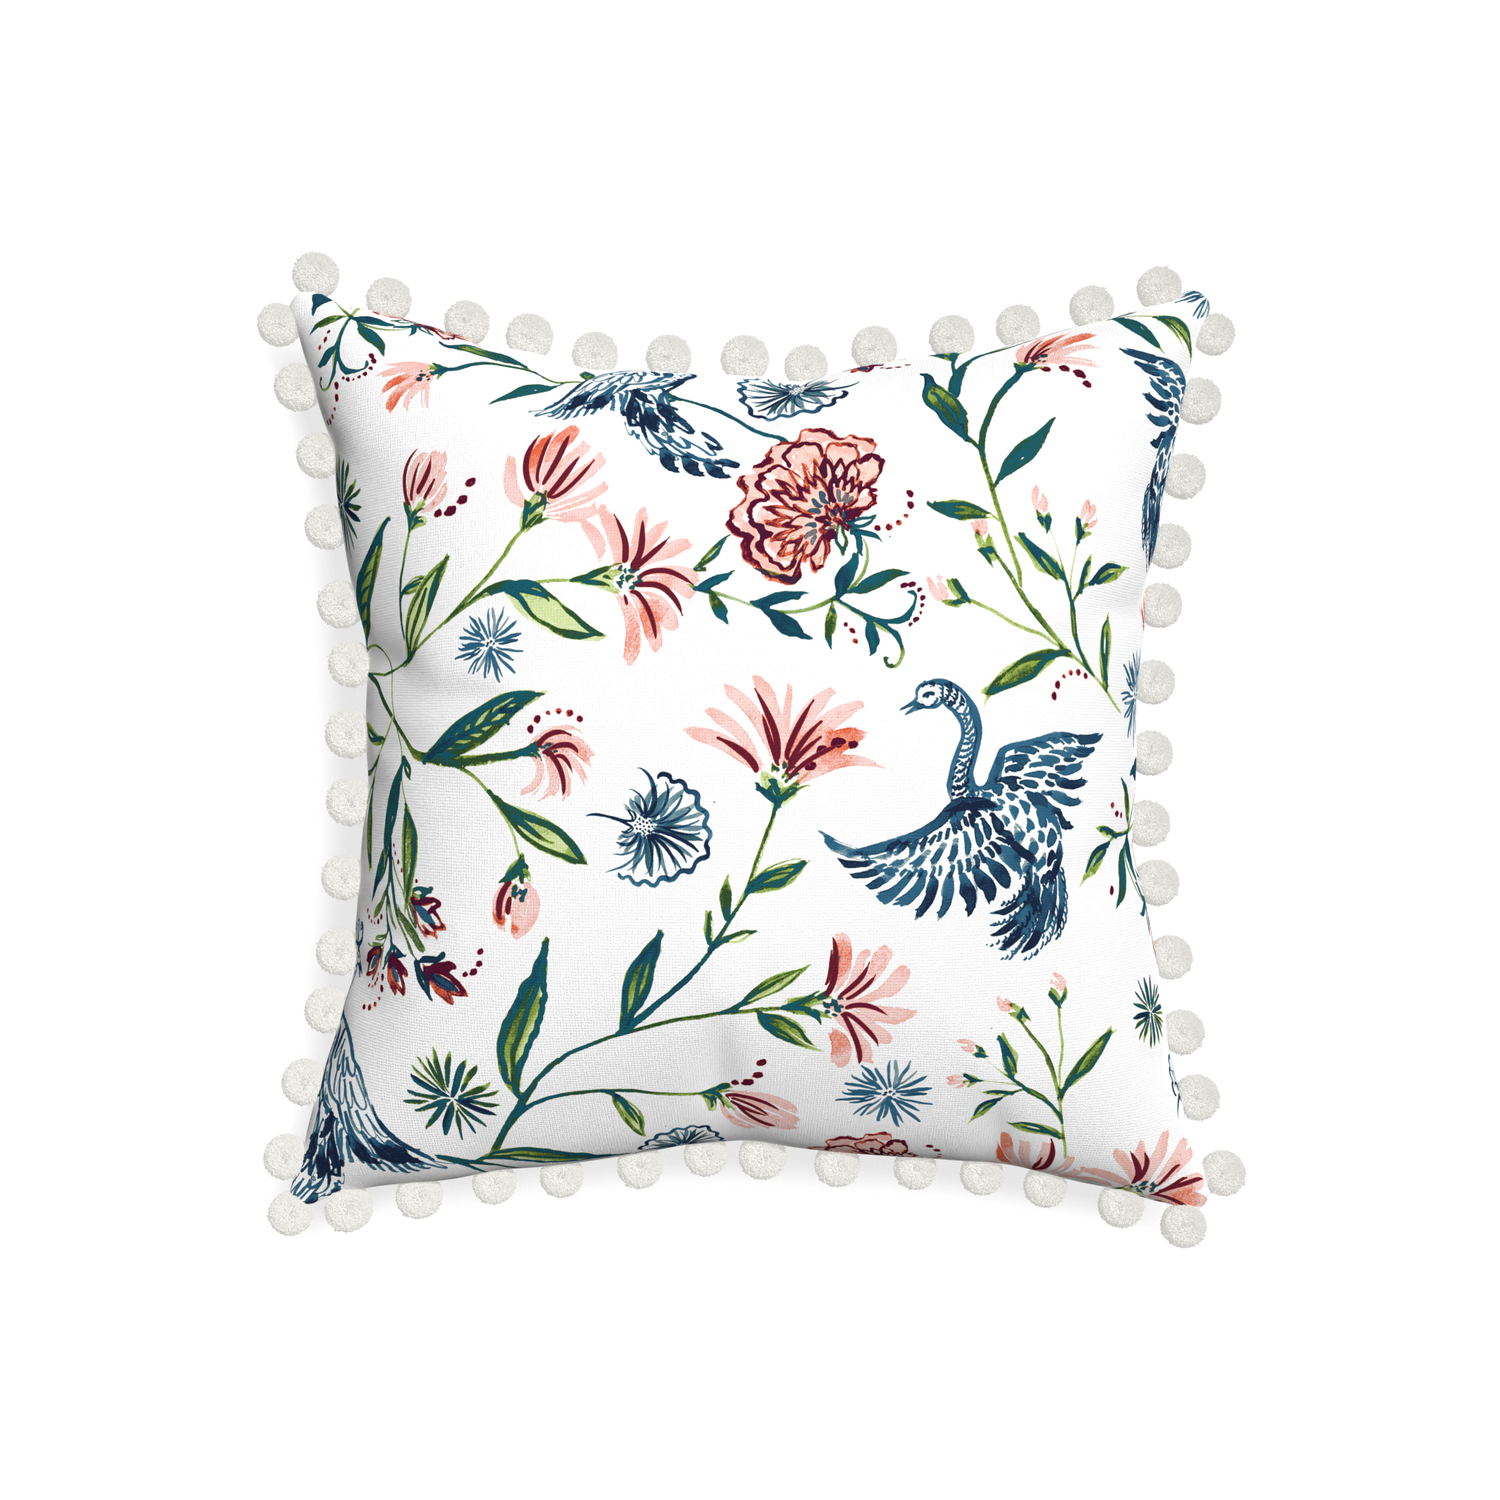 20-square daphne cream custom pillow with snow pom pom on white background